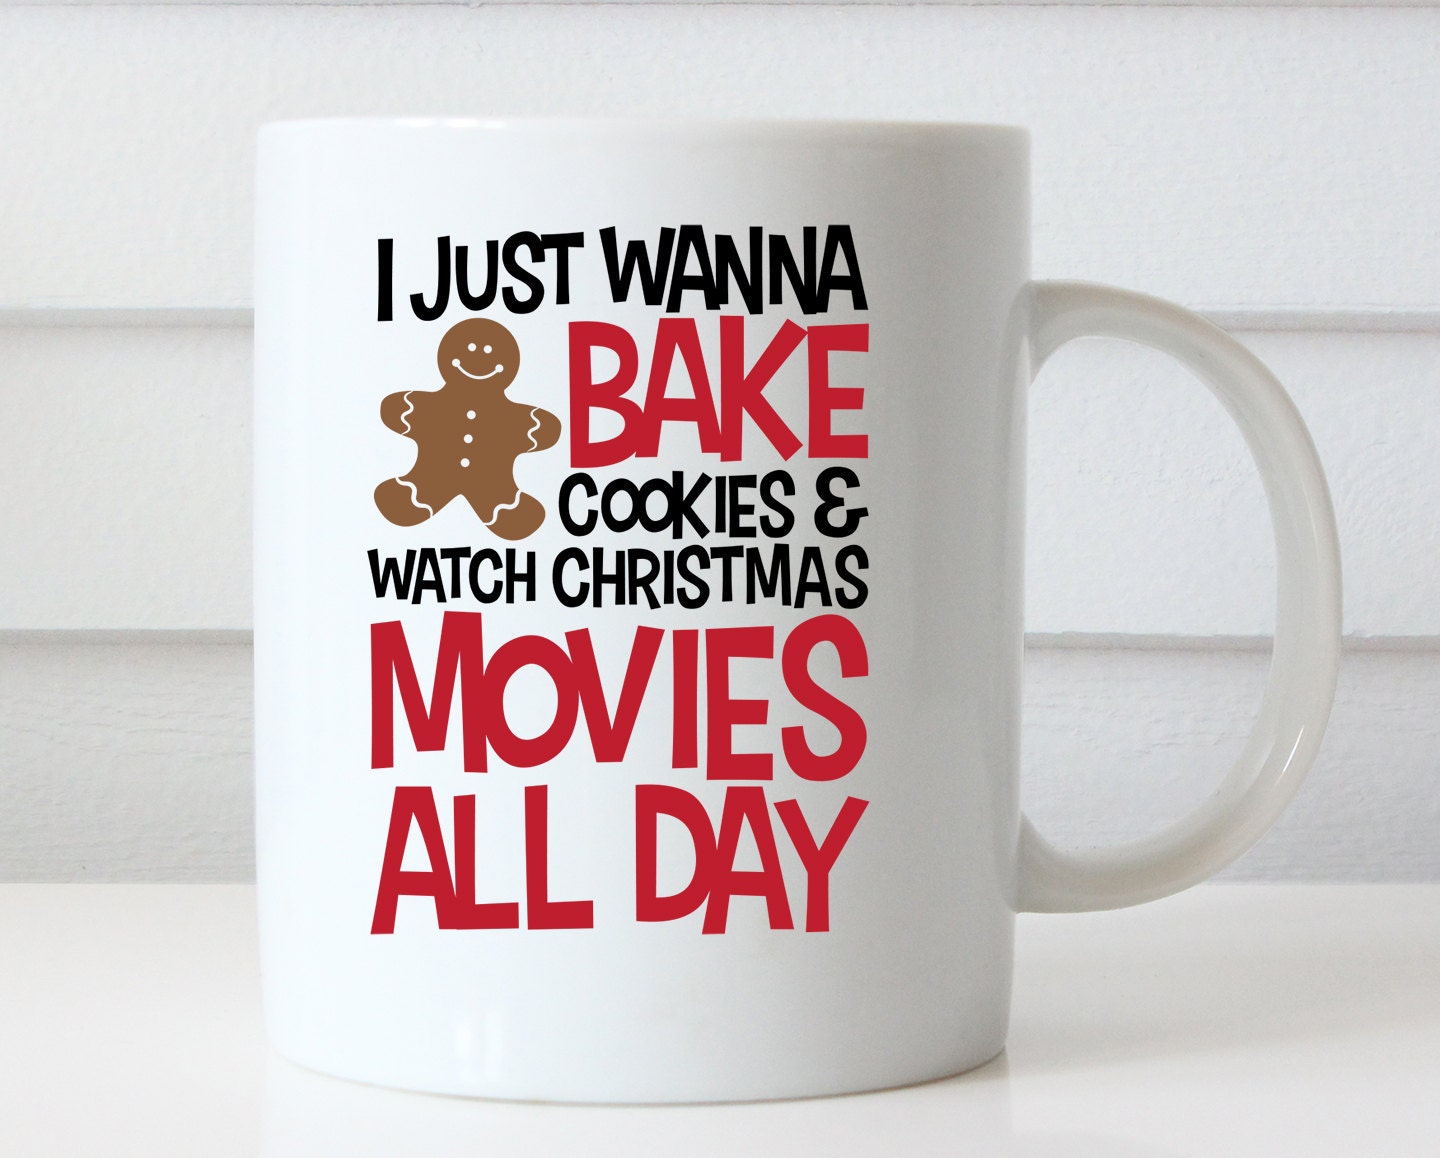 Merry Christmas Mug Christmas Coffee Mug Christmas Mug